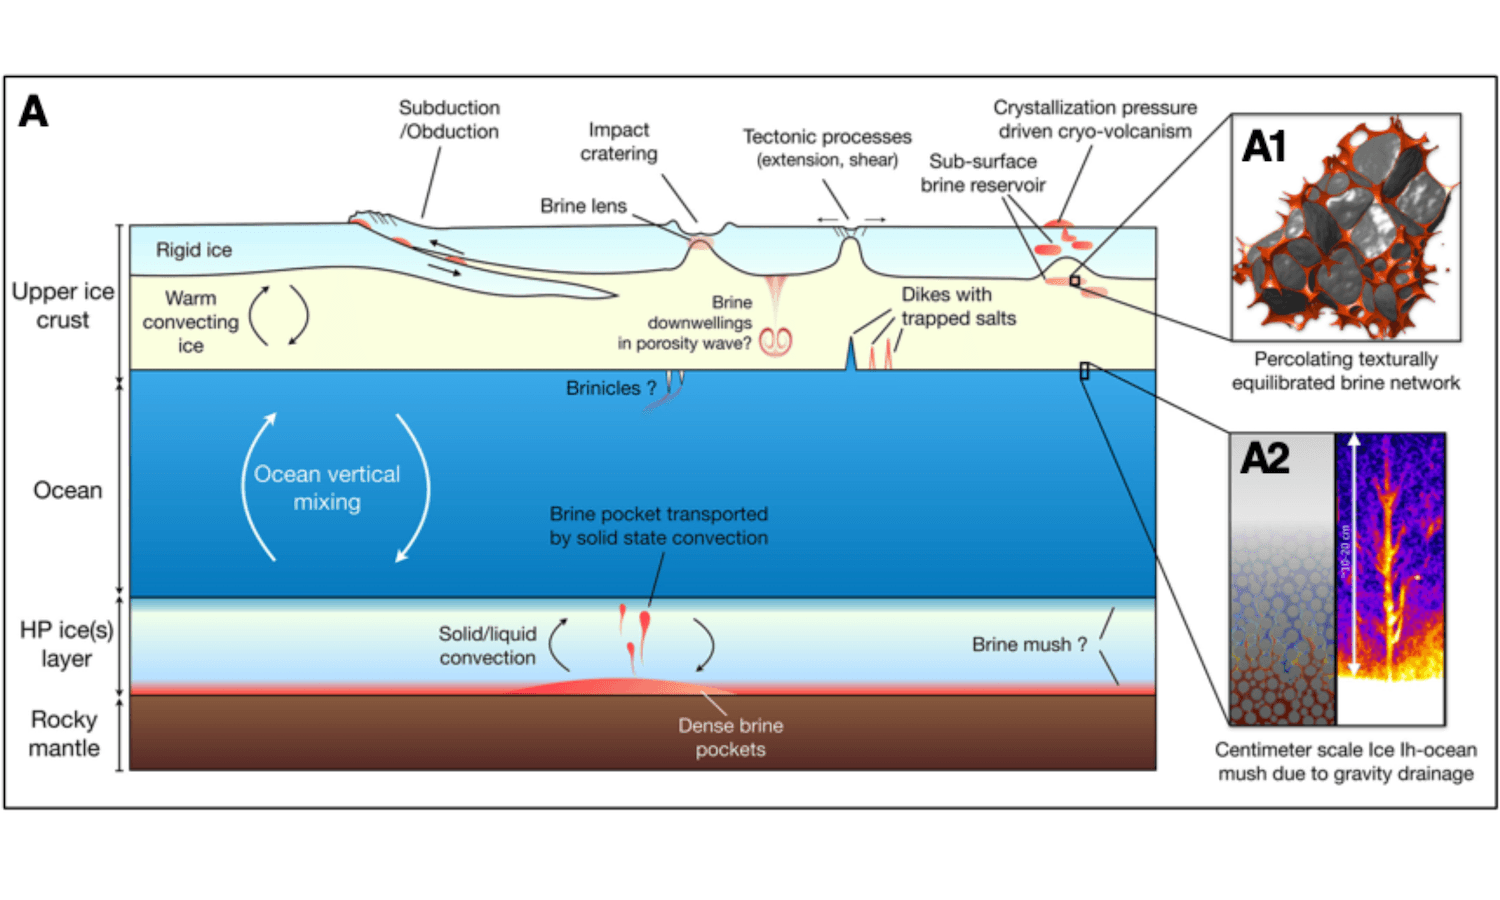 Figure 1: Ice-ocean impurities